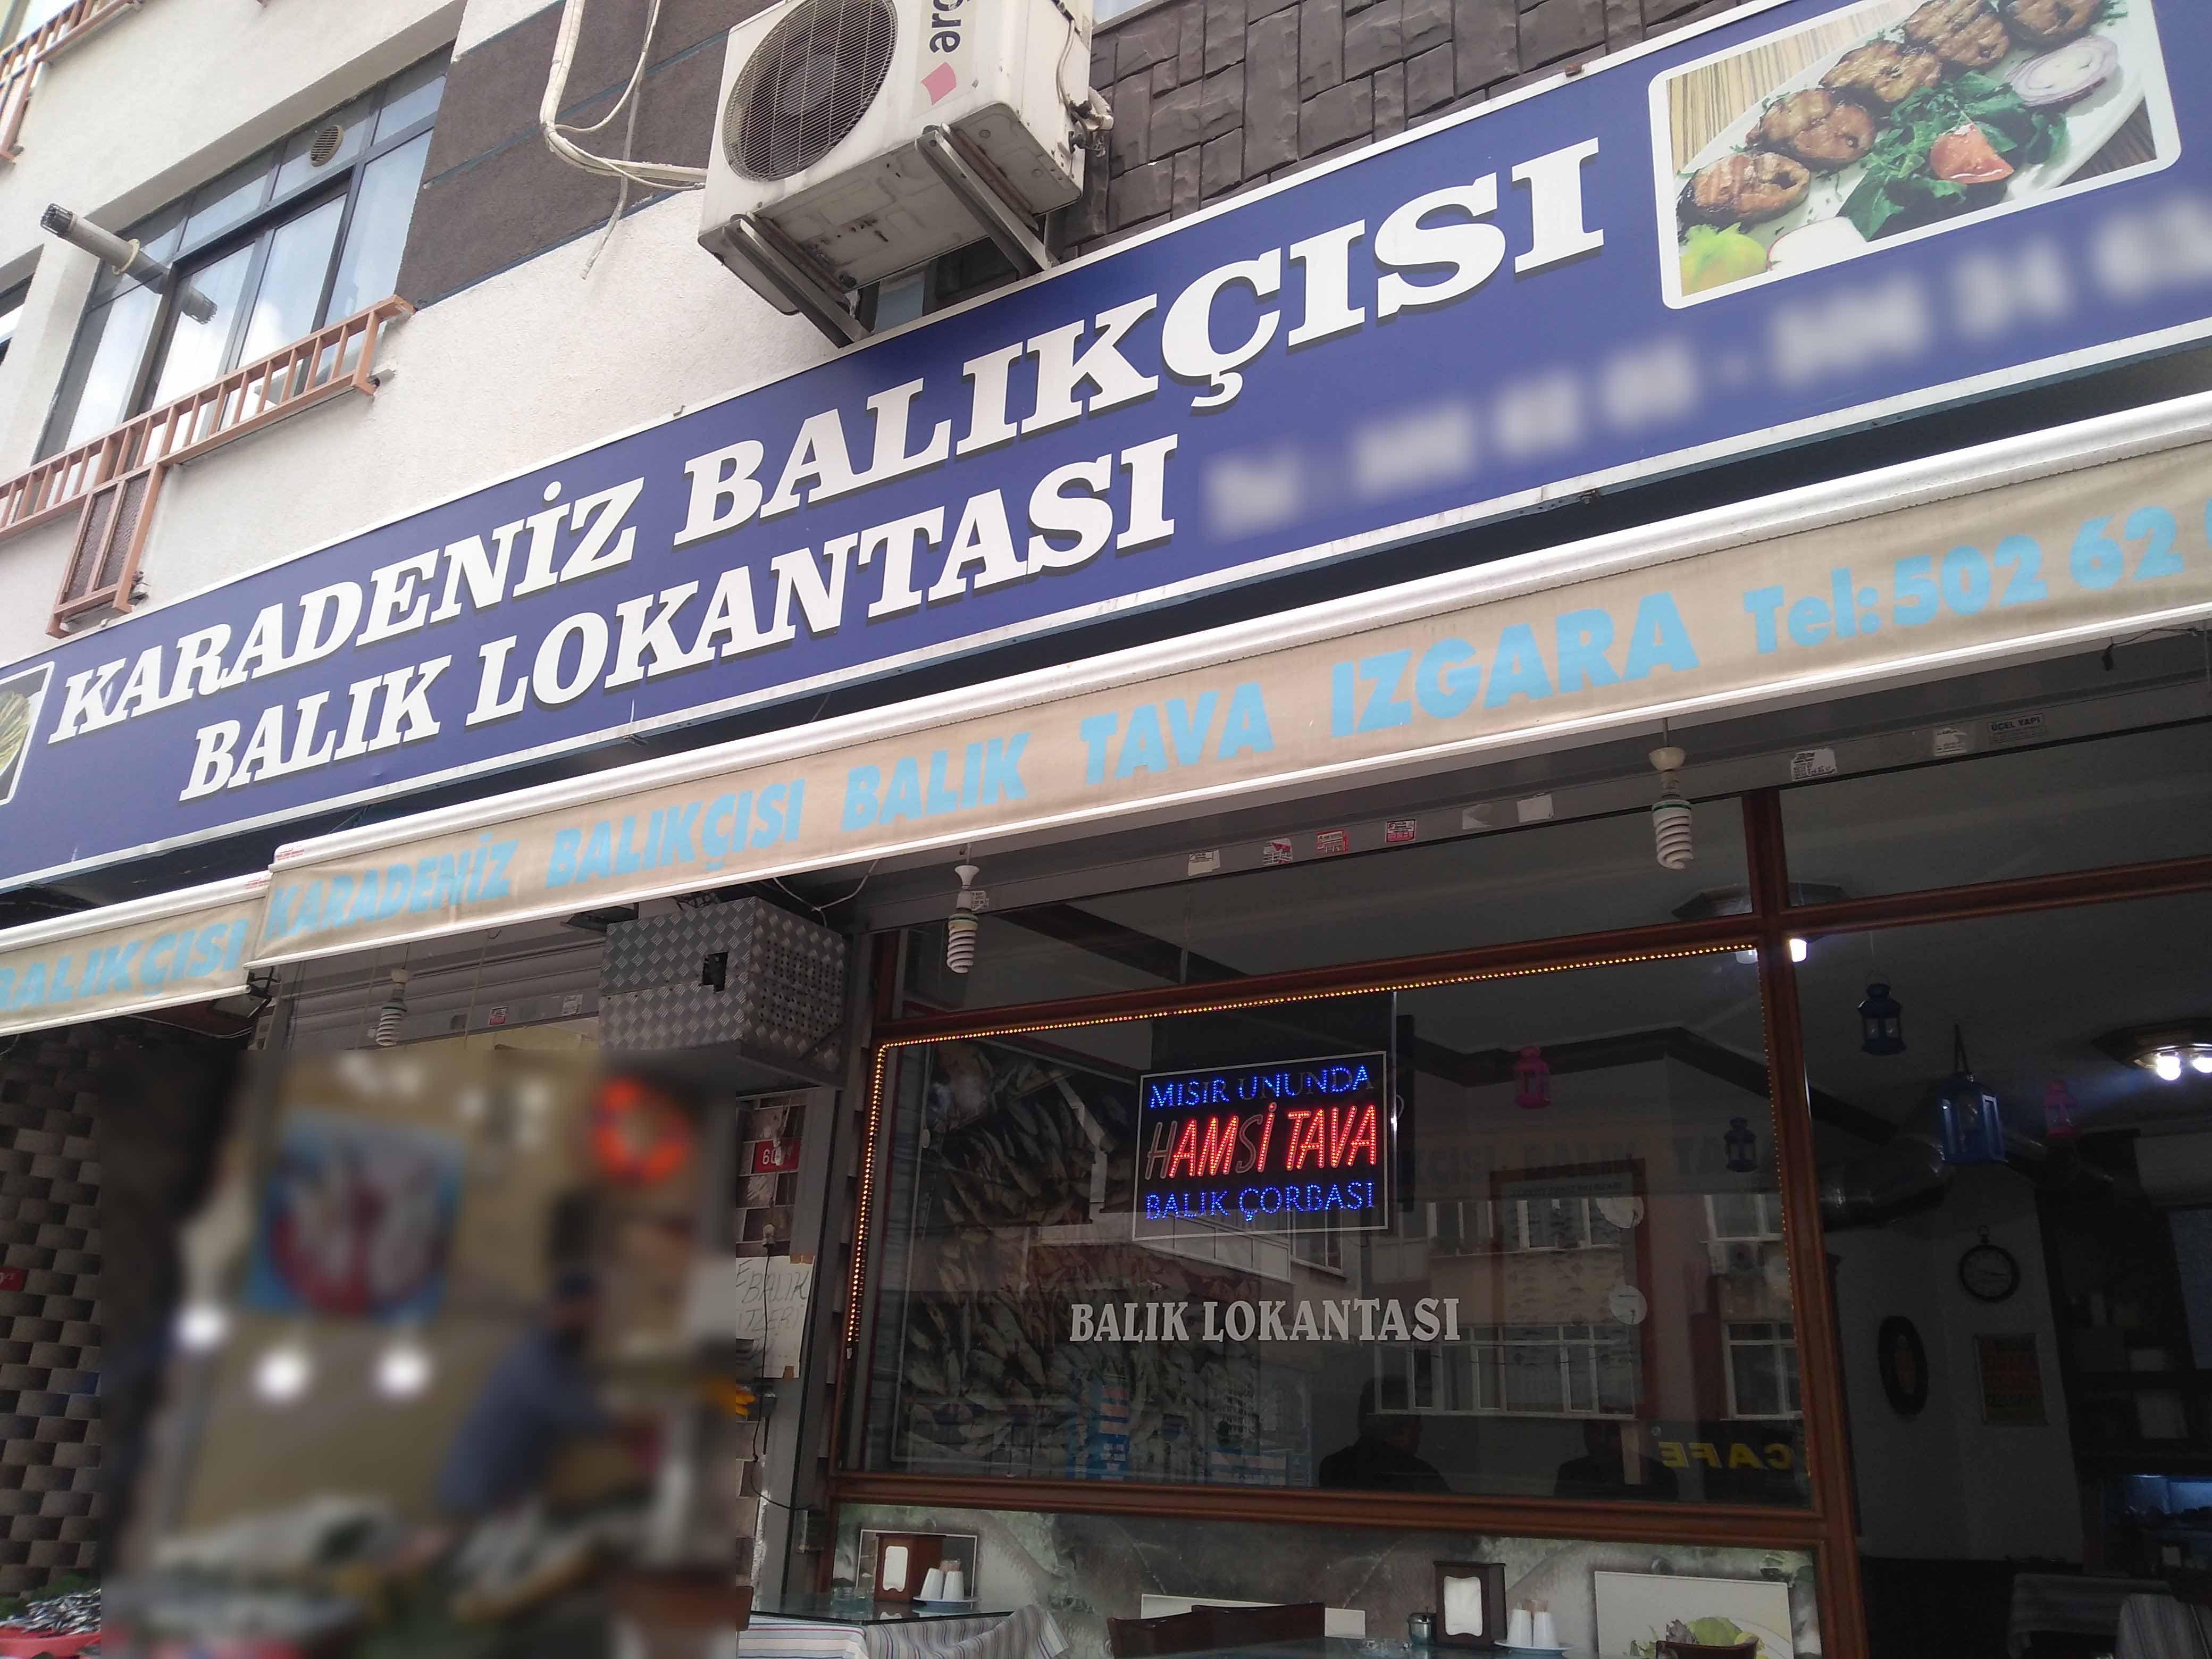 Karadeniz Balikcisi Bahcelievler Merkez Istanbul Zomato